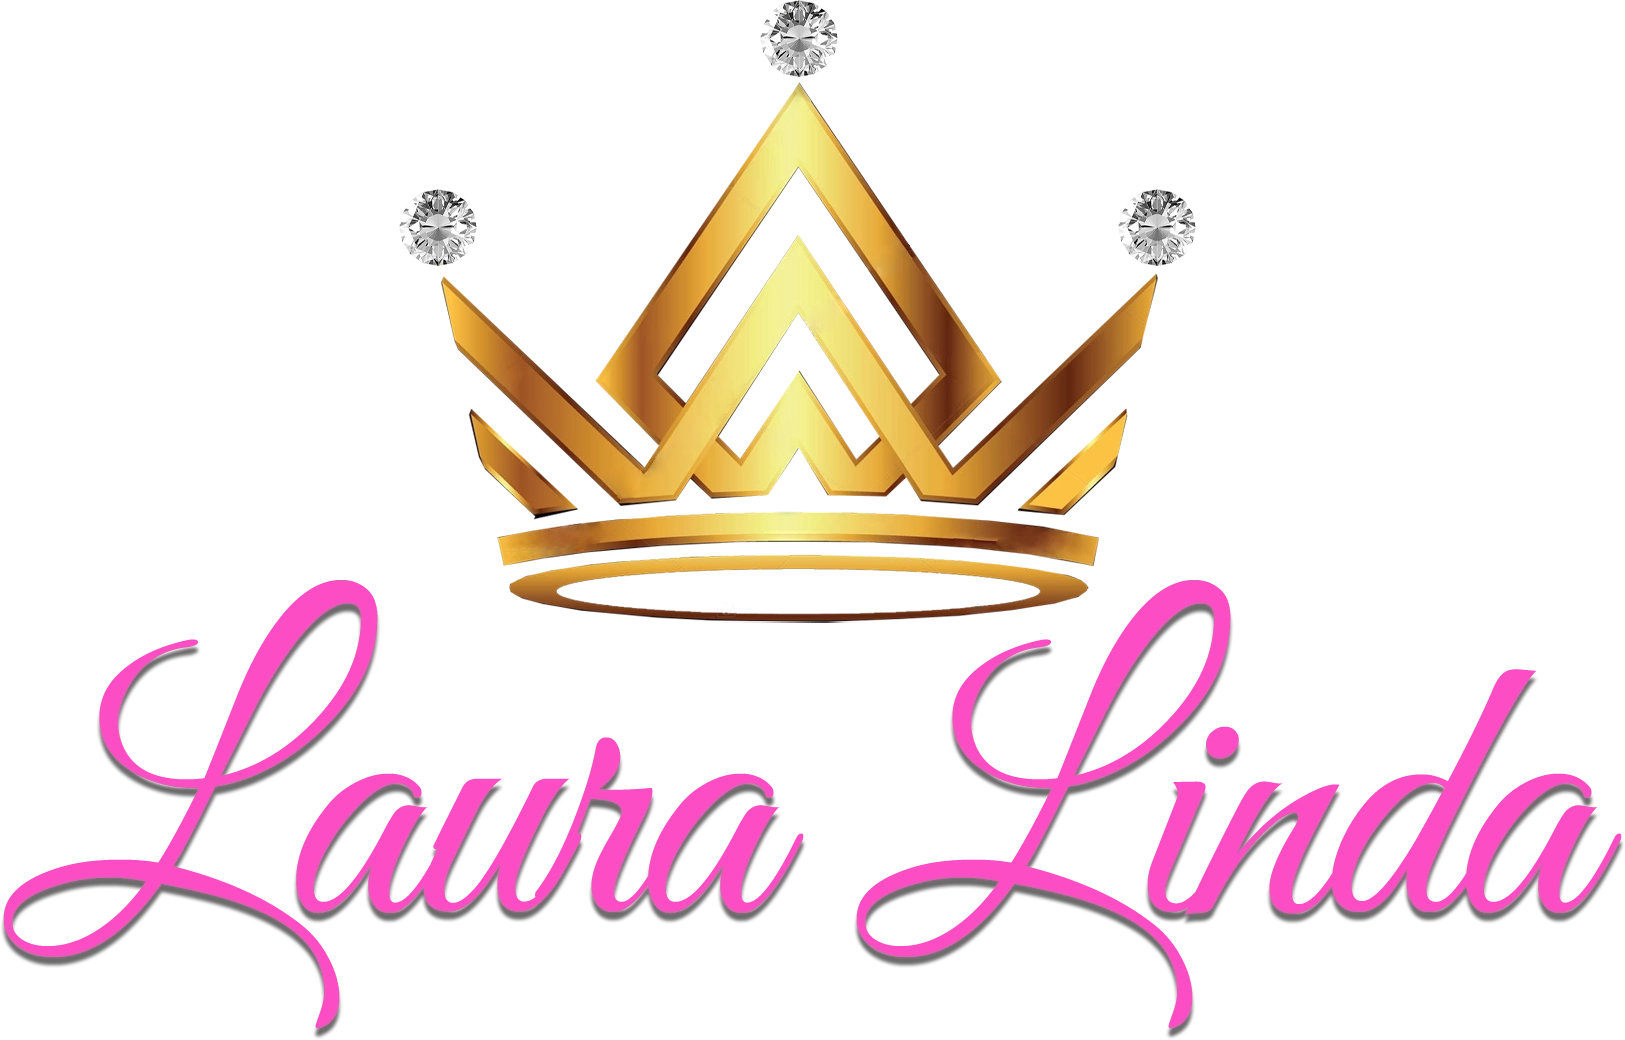 Laura Linda